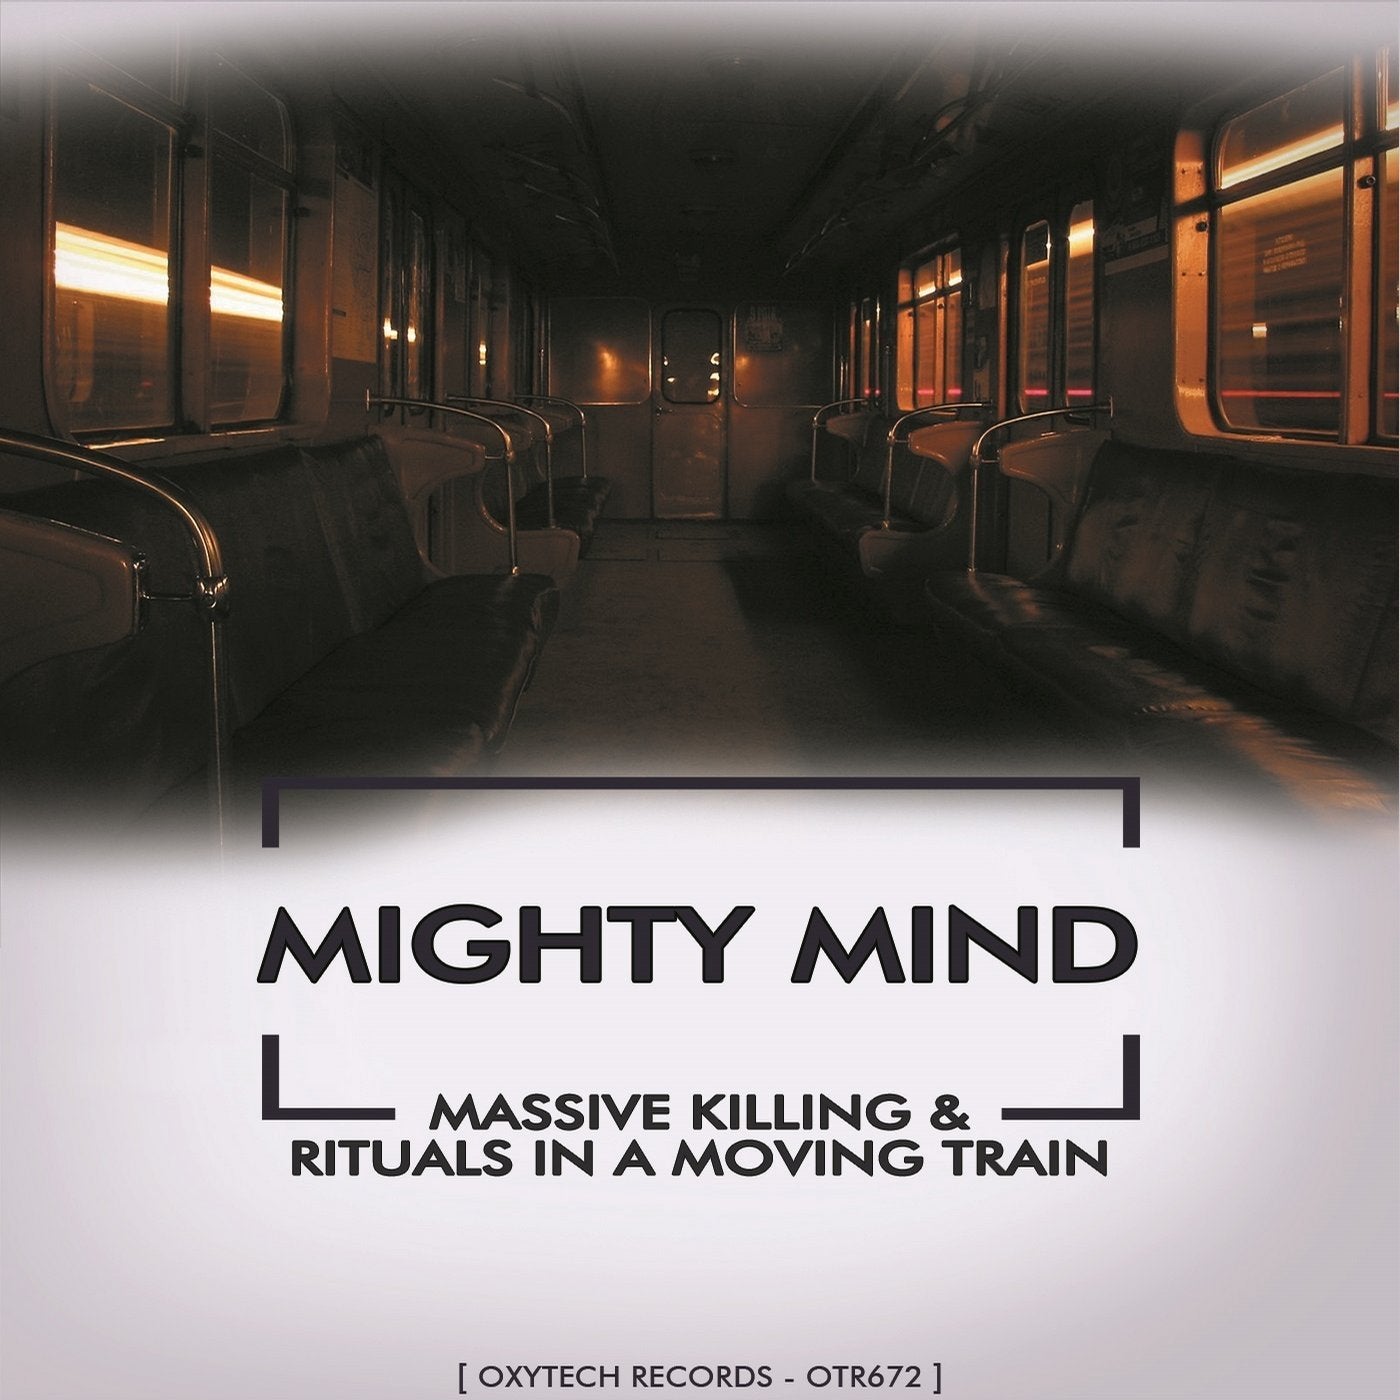 Massive Killing & Rituals in a Moving Train